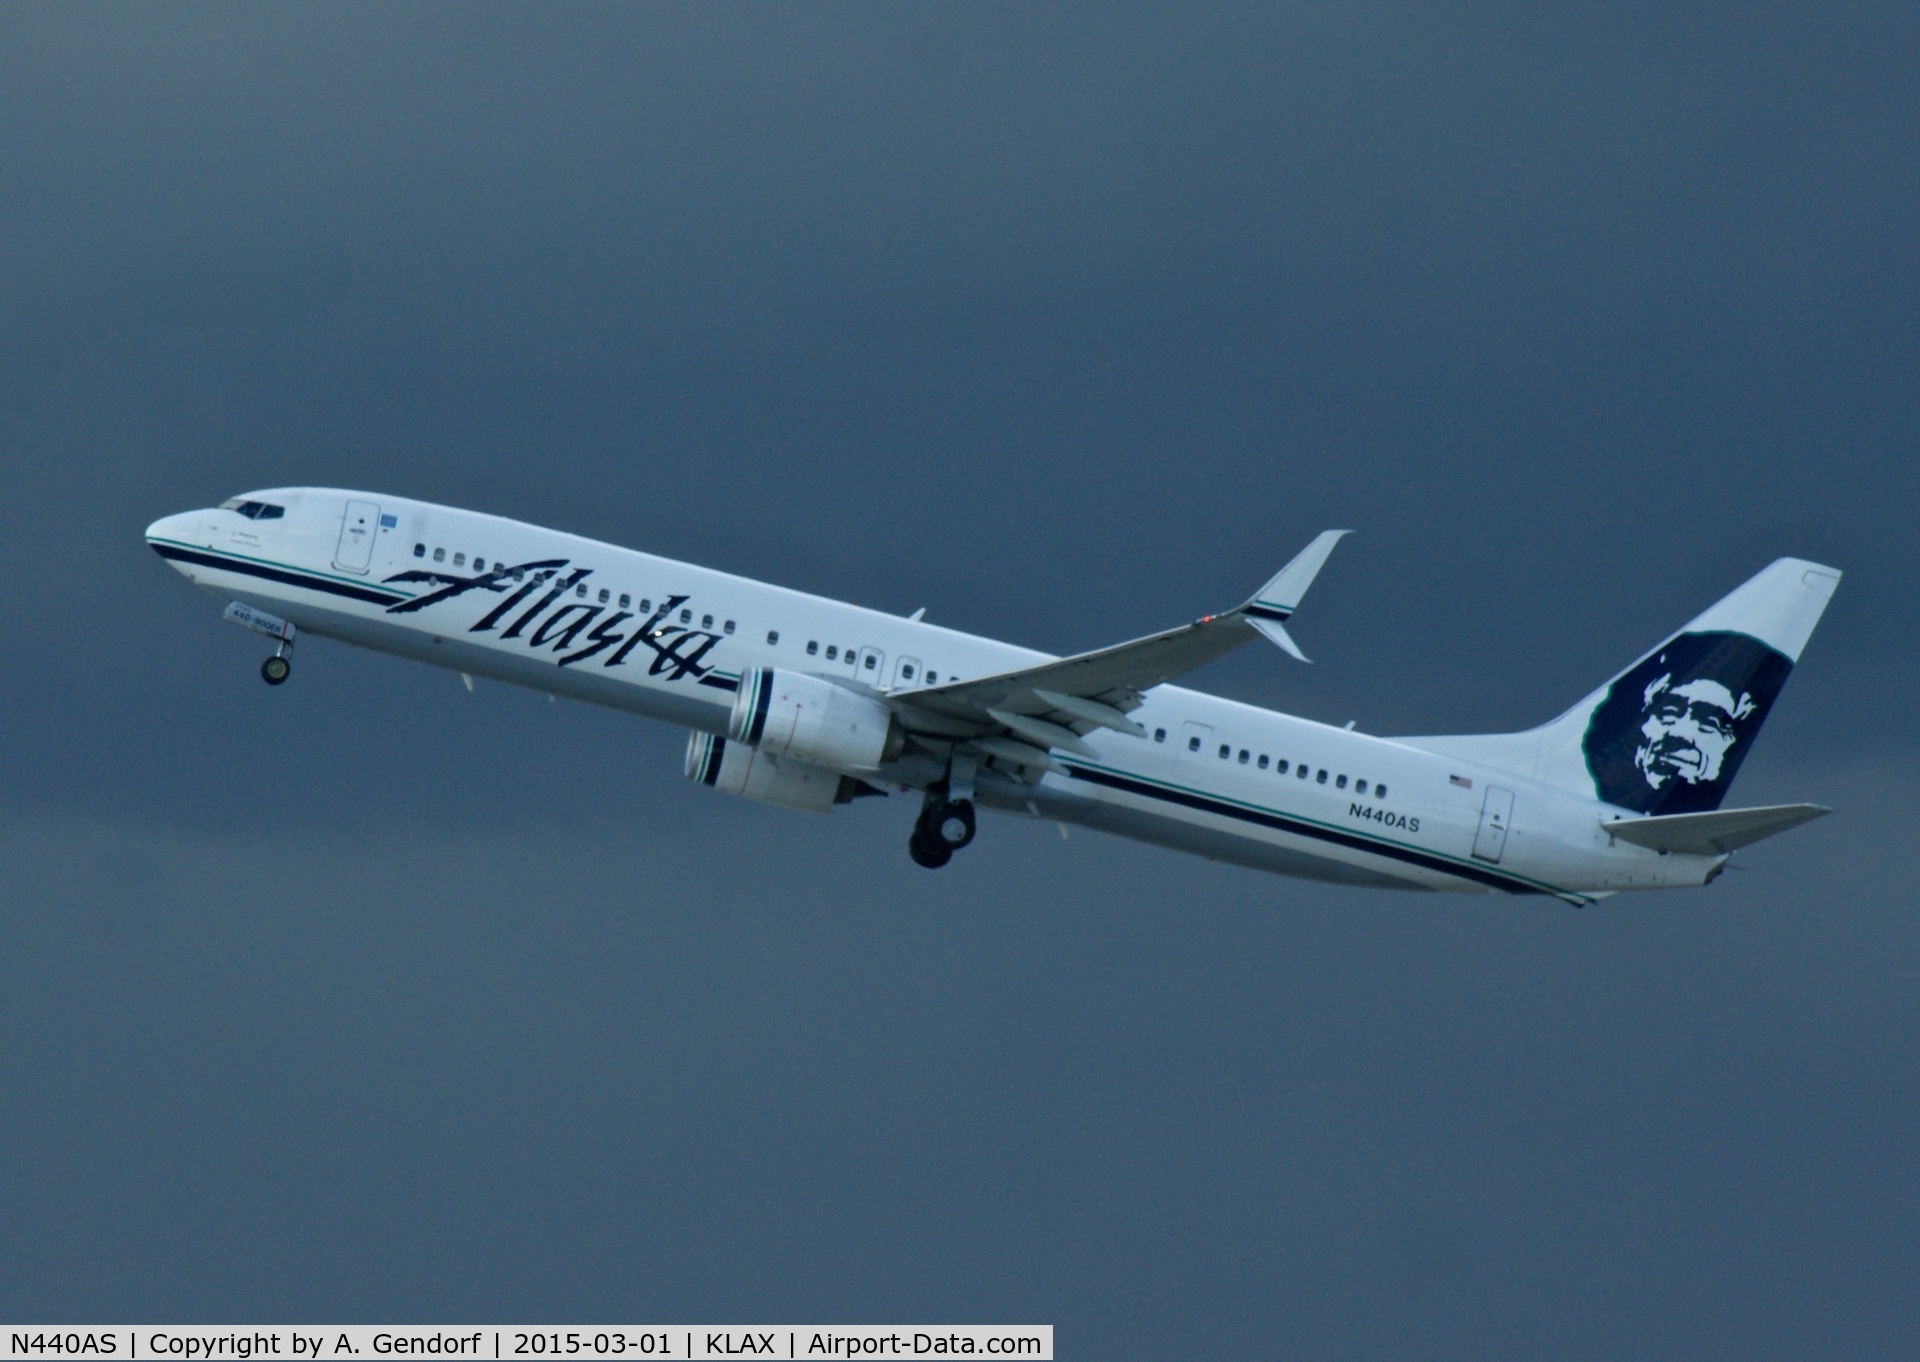 N440AS, 2013 Boeing 737-990/ER C/N 41705, Alaska Airlines, is here powerful departing at Los Angeles Int'l(KLAX)